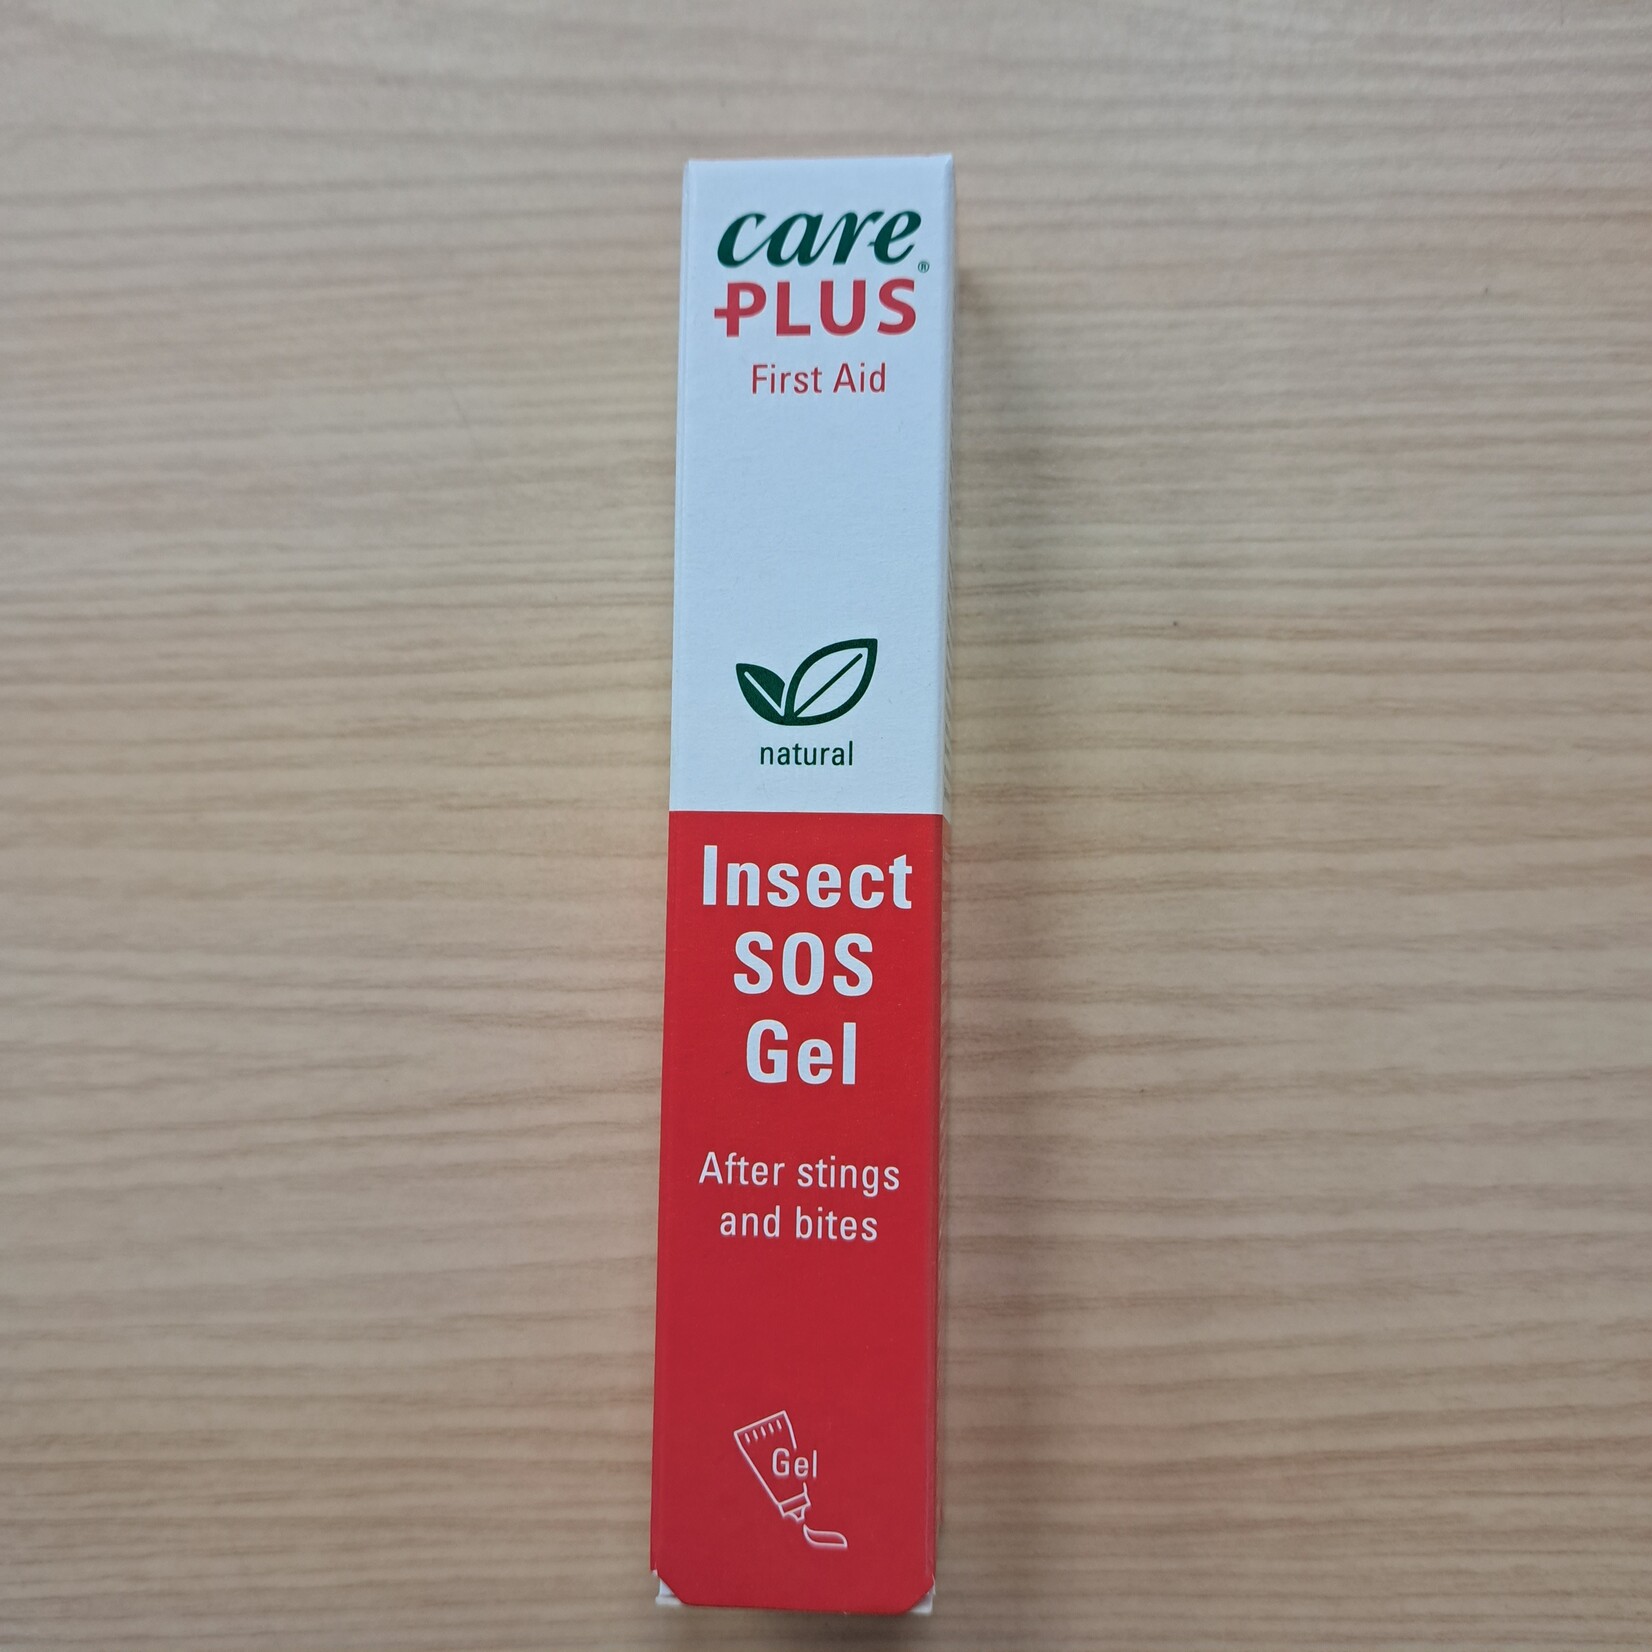 Care Plus Care Plus, insect SOS Gel